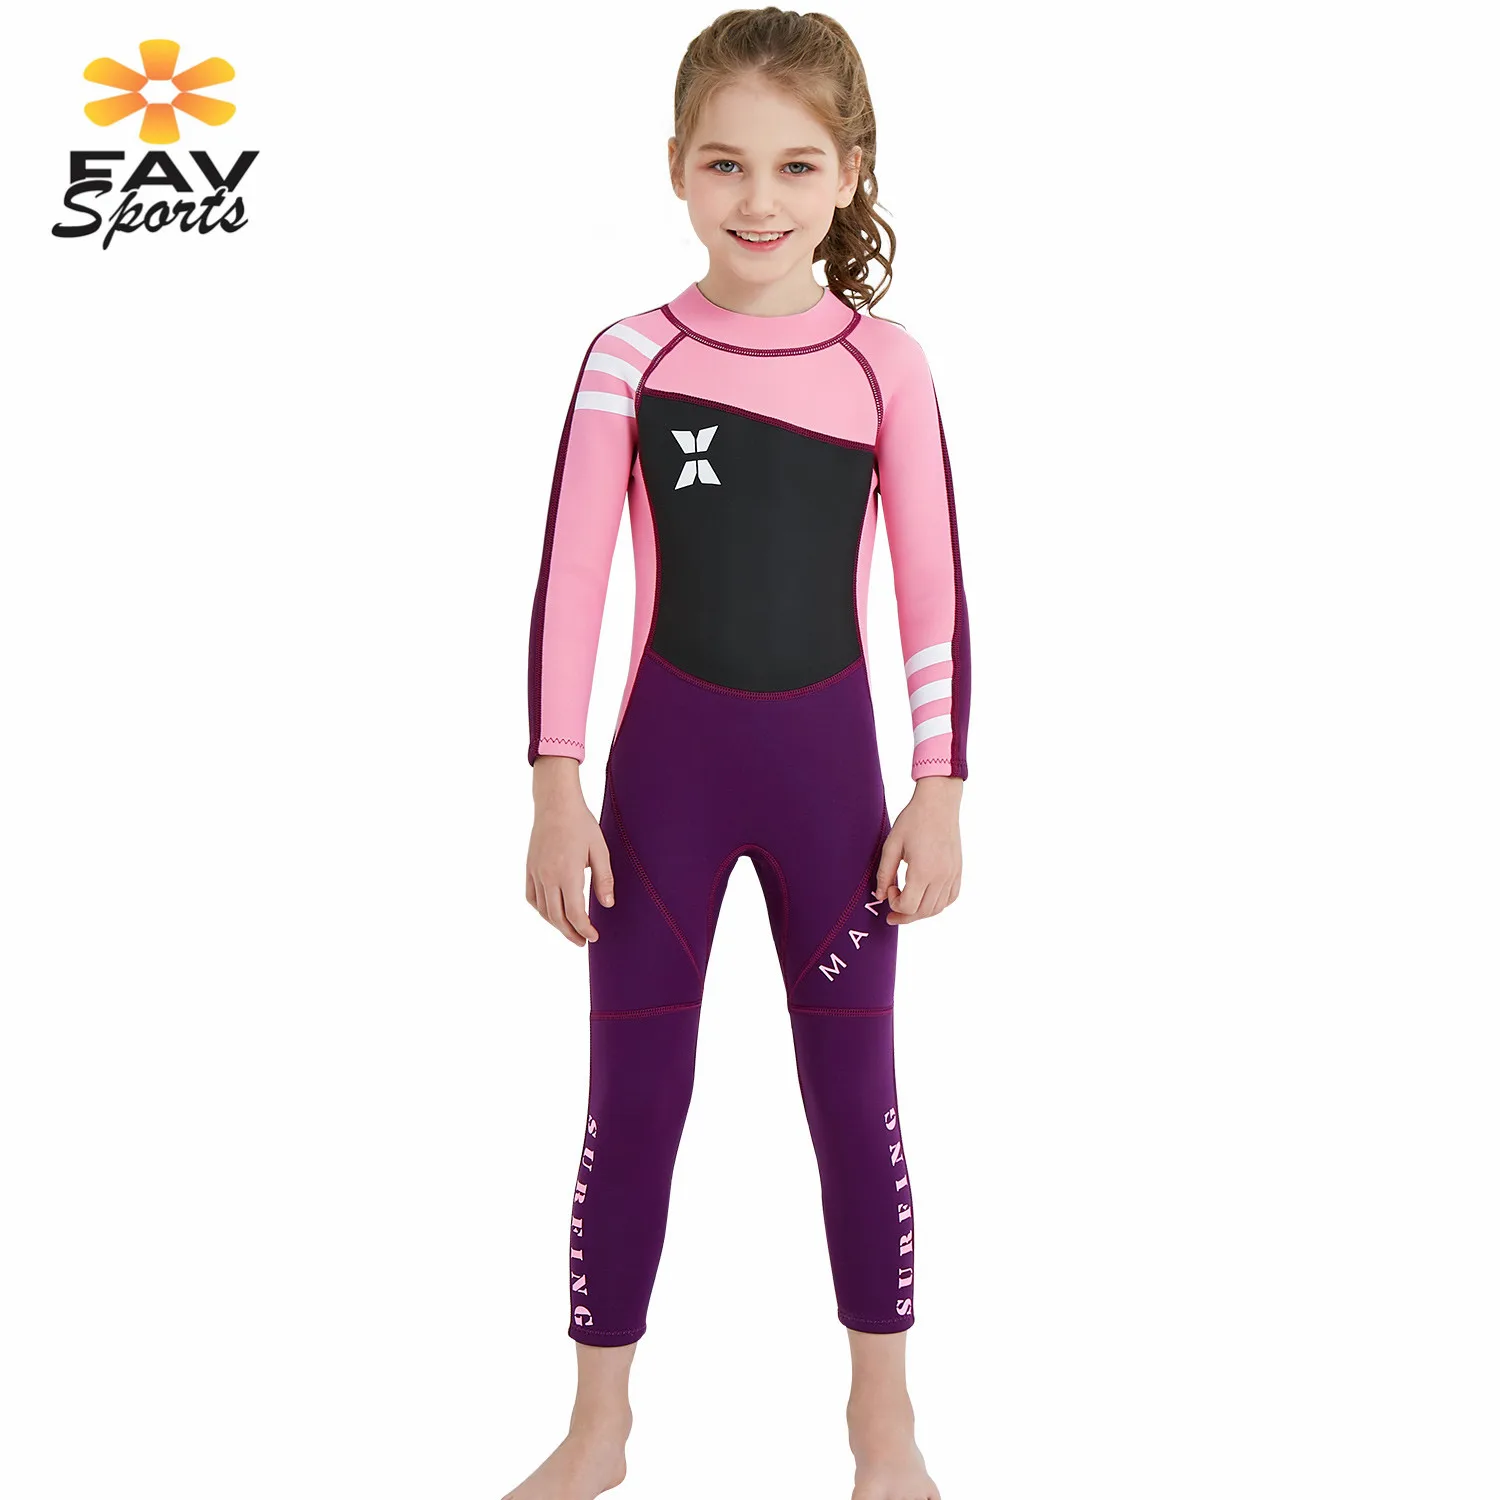 FAVSPORTS купальники для девочек 2,5 мм Неопреновые водолазные костюмы с защитой от ультрафиолетового излучения Теплый купальник для детей полный боди для серфинга плавательный костюм